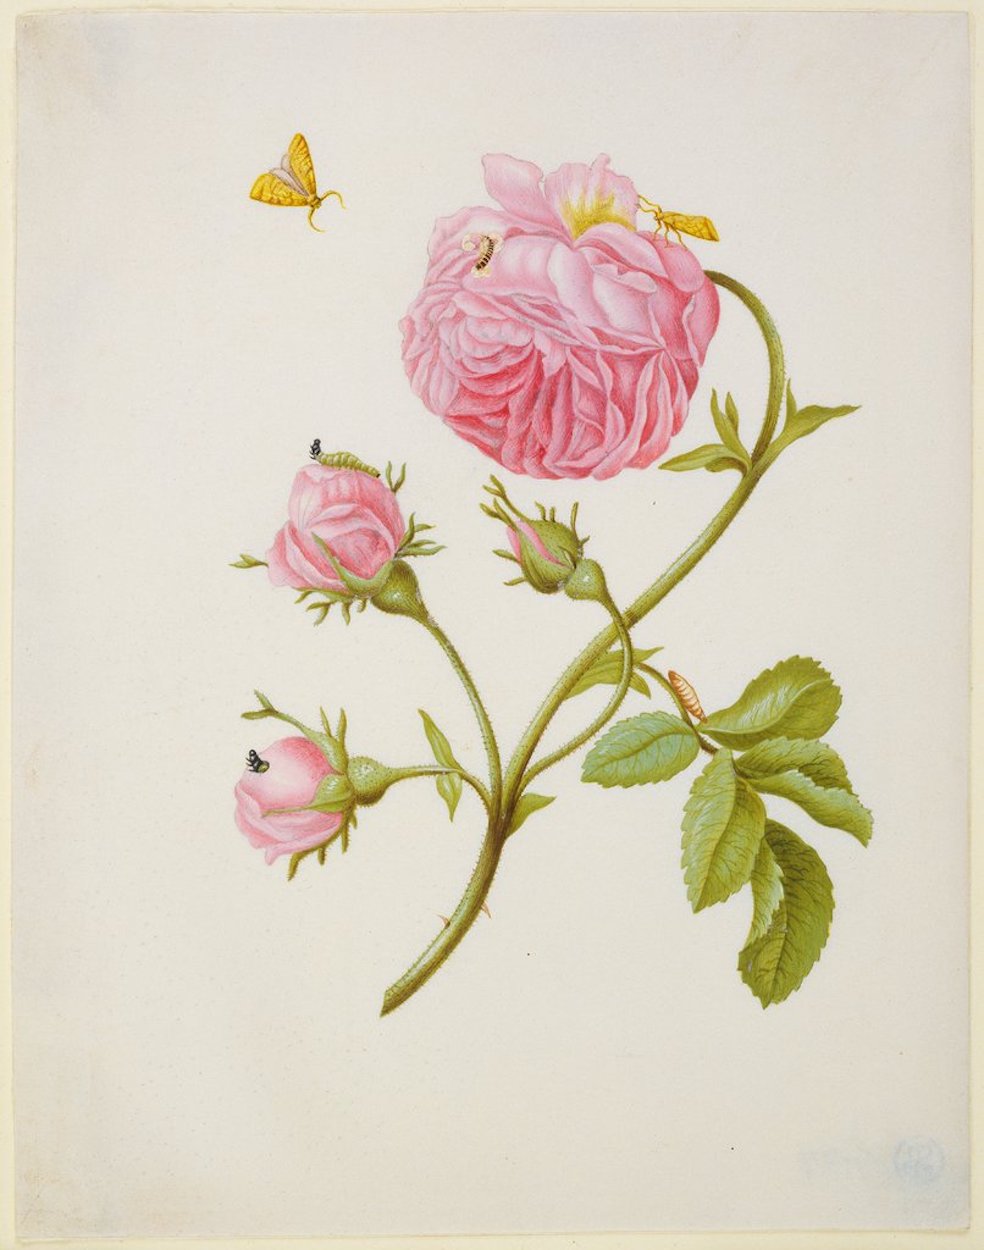 Rosa con metamorfosi di Tortricidae ed una larva di coleottero incollata by Maria Sibylla Merian - post 1679 - 18,8 x 14,6 cm 